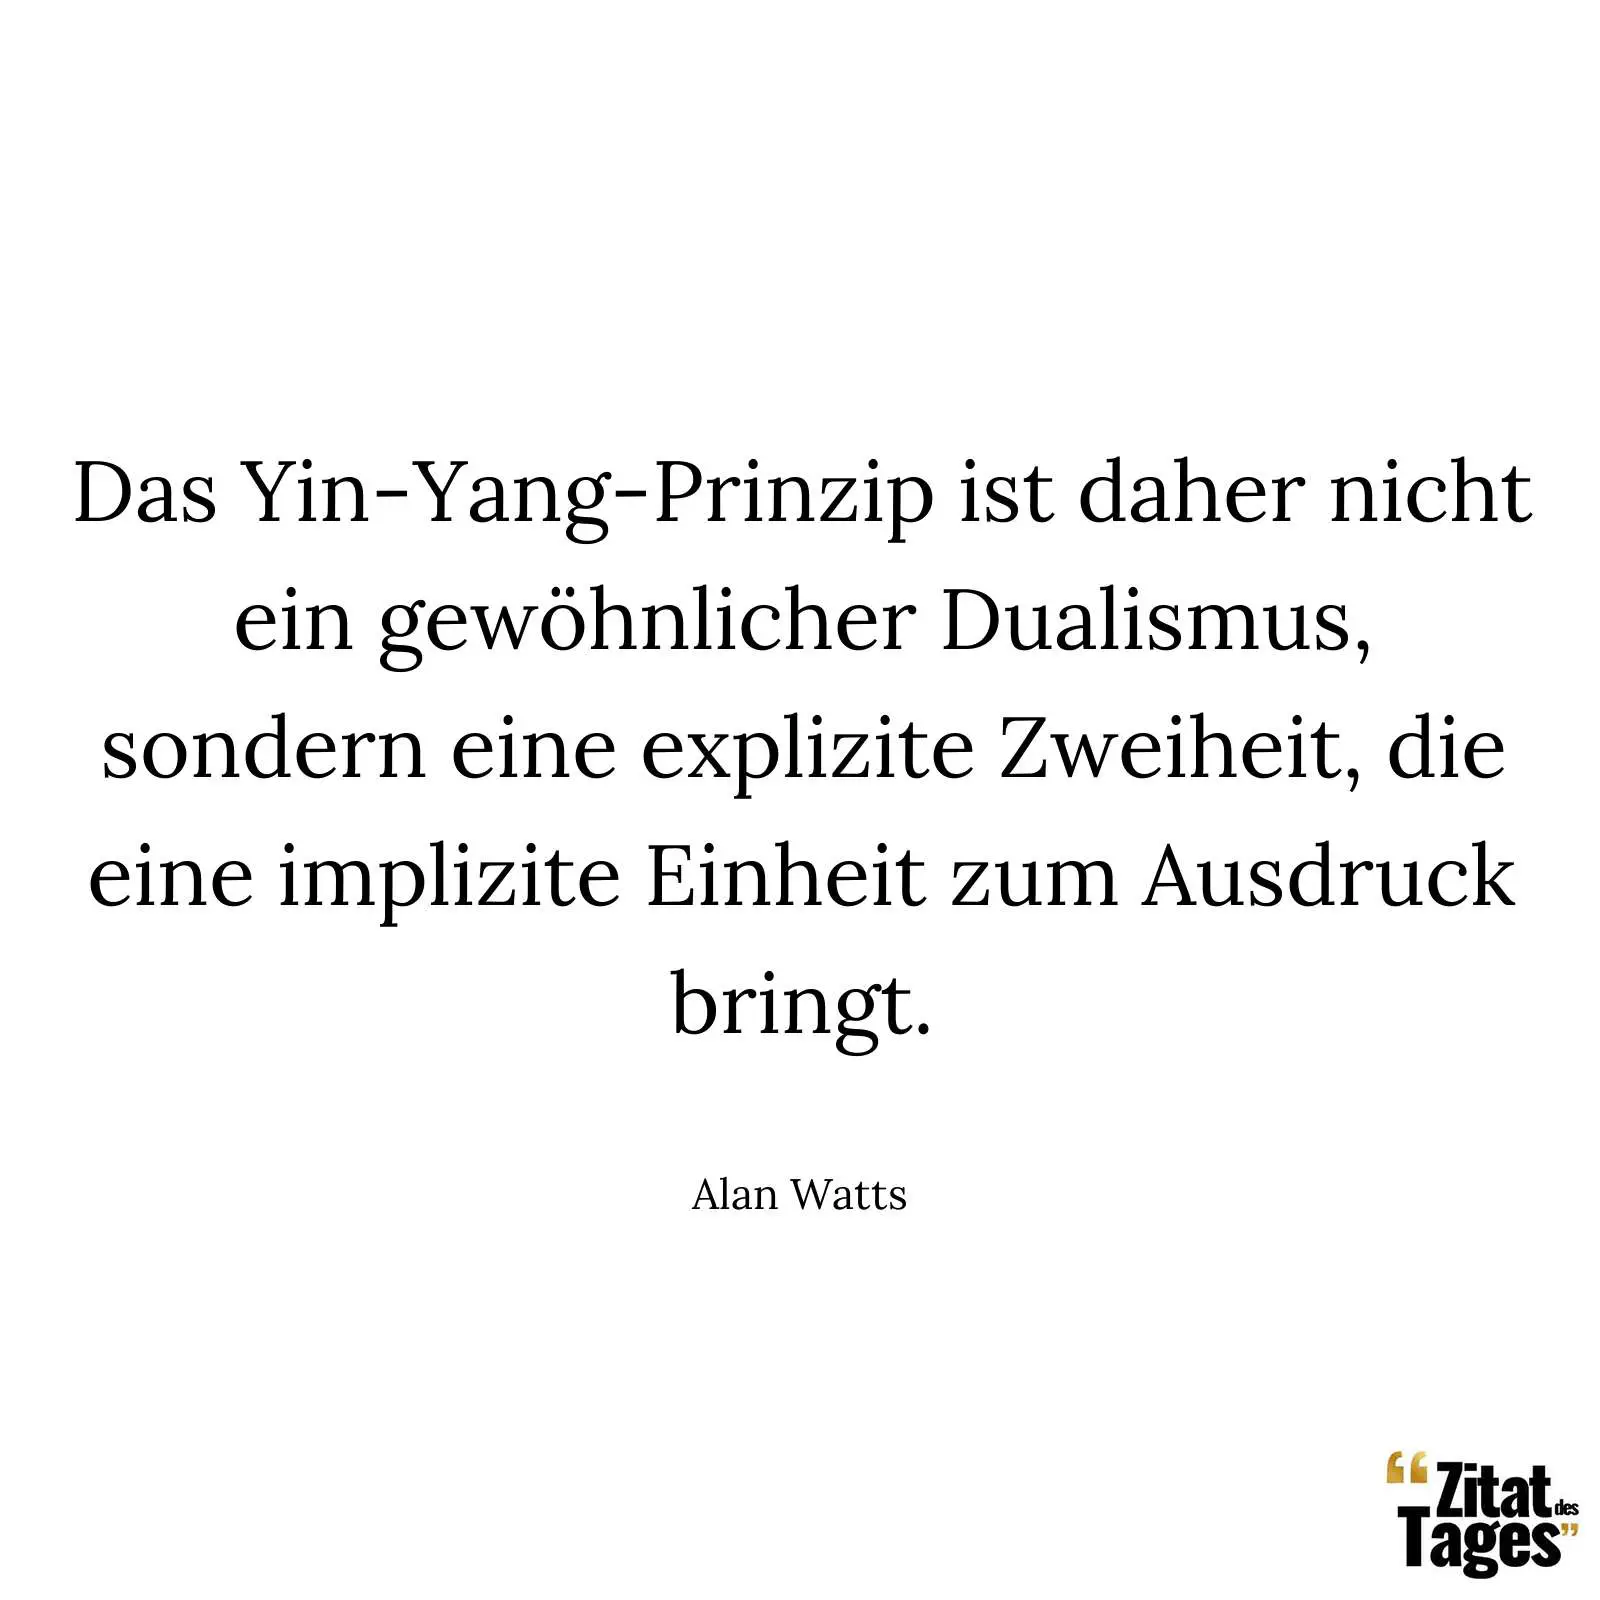 Das Yin-Yang-Prinzip ist daher nicht ein gewöhnlicher Dualismus, sondern eine explizite Zweiheit, die eine implizite Einheit zum Ausdruck bringt. - Alan Watts